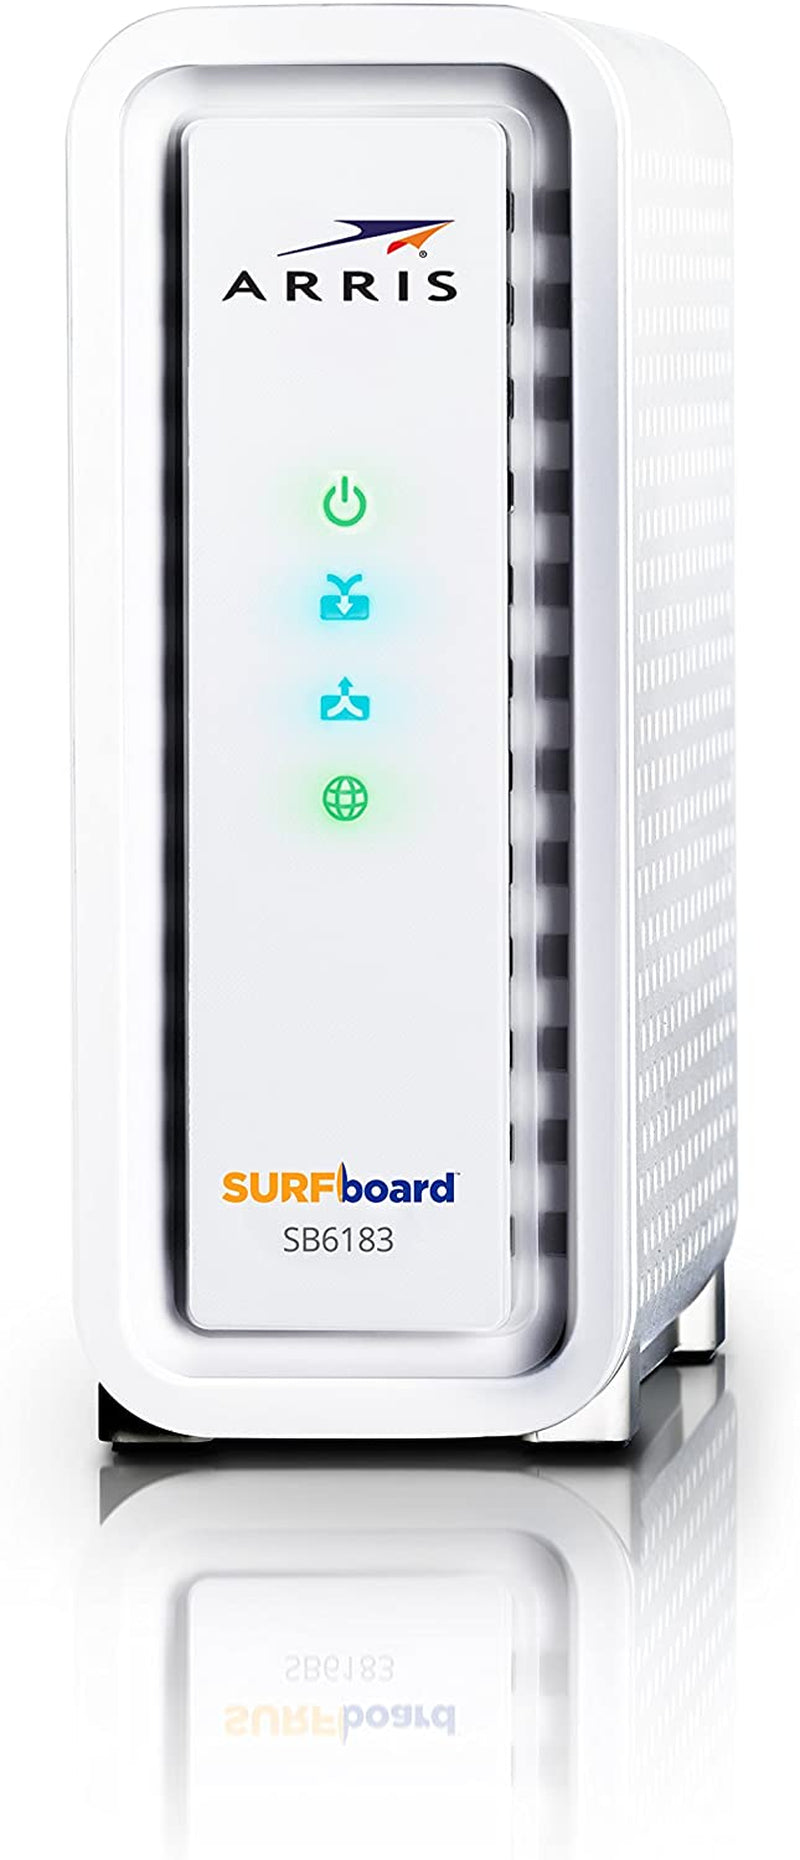 ARRIS SURFboard SB6183-RB DOCSIS 3.0 16x4 Cable Modem